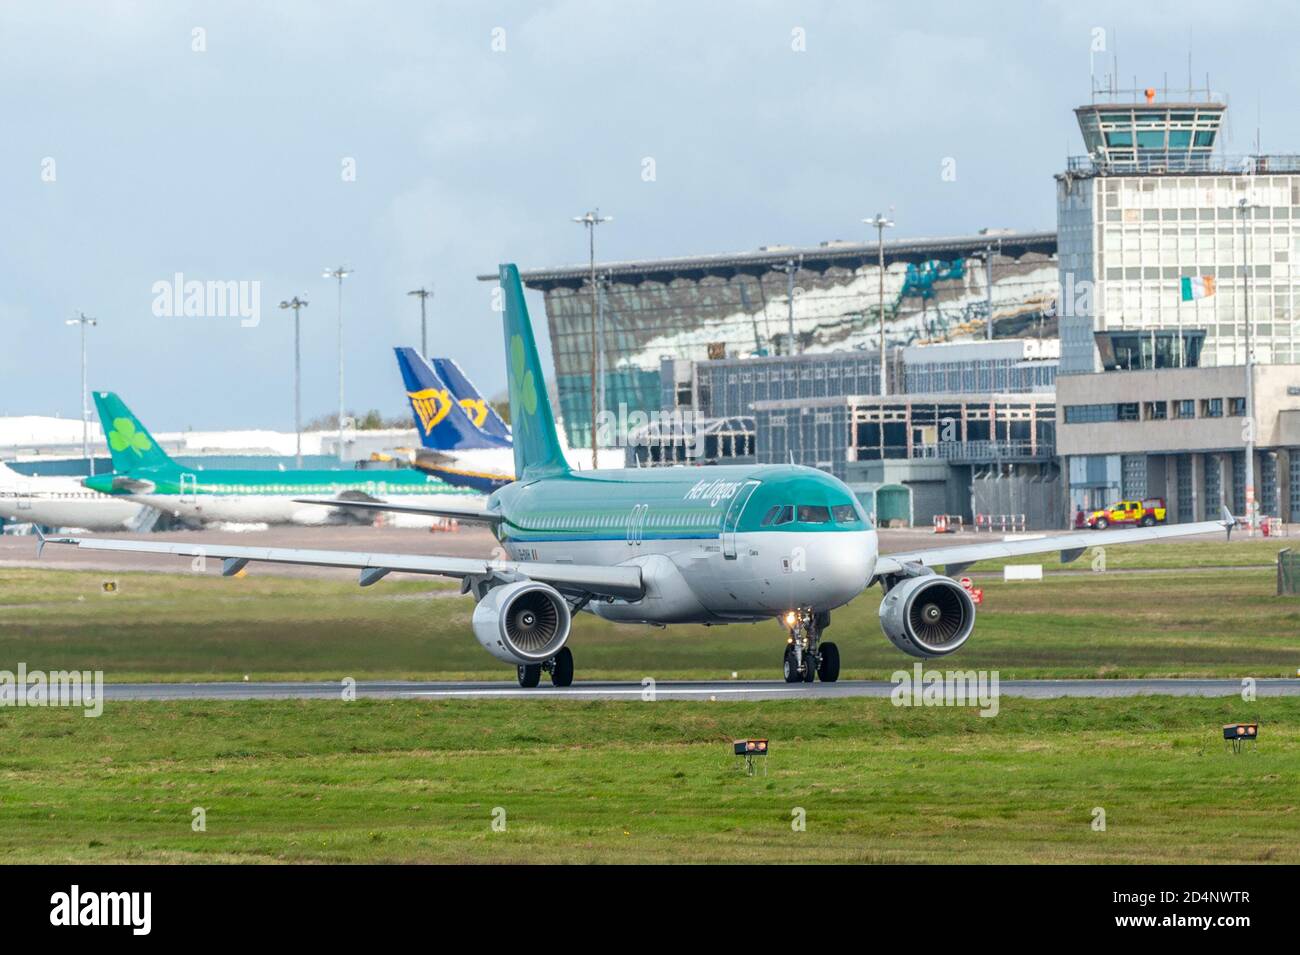 Cork, Irlande. 10 octobre 2020. Les avions AER Lingus et Ryanair sont redondants sur le tarmac de l'aéroport de Cork, les restrictions de niveau 3 de l'Irlande frappant fortement les voyages internationaux. A partir du lundi 12 octobre, le gouvernement a déclaré qu'il n'y aura pas de pays étrangers sur la liste verte de voyage, ce qui signifie que quiconque vole en Irlande devra s'auto-isoler pendant 14 jours. La prochaine révision aura lieu le jeudi 15 octobre. Le vol EI172 d'AER Lingus se prépare pour le décollage à Londres Heathrow. Crédit : AG News/Alay Live News Banque D'Images